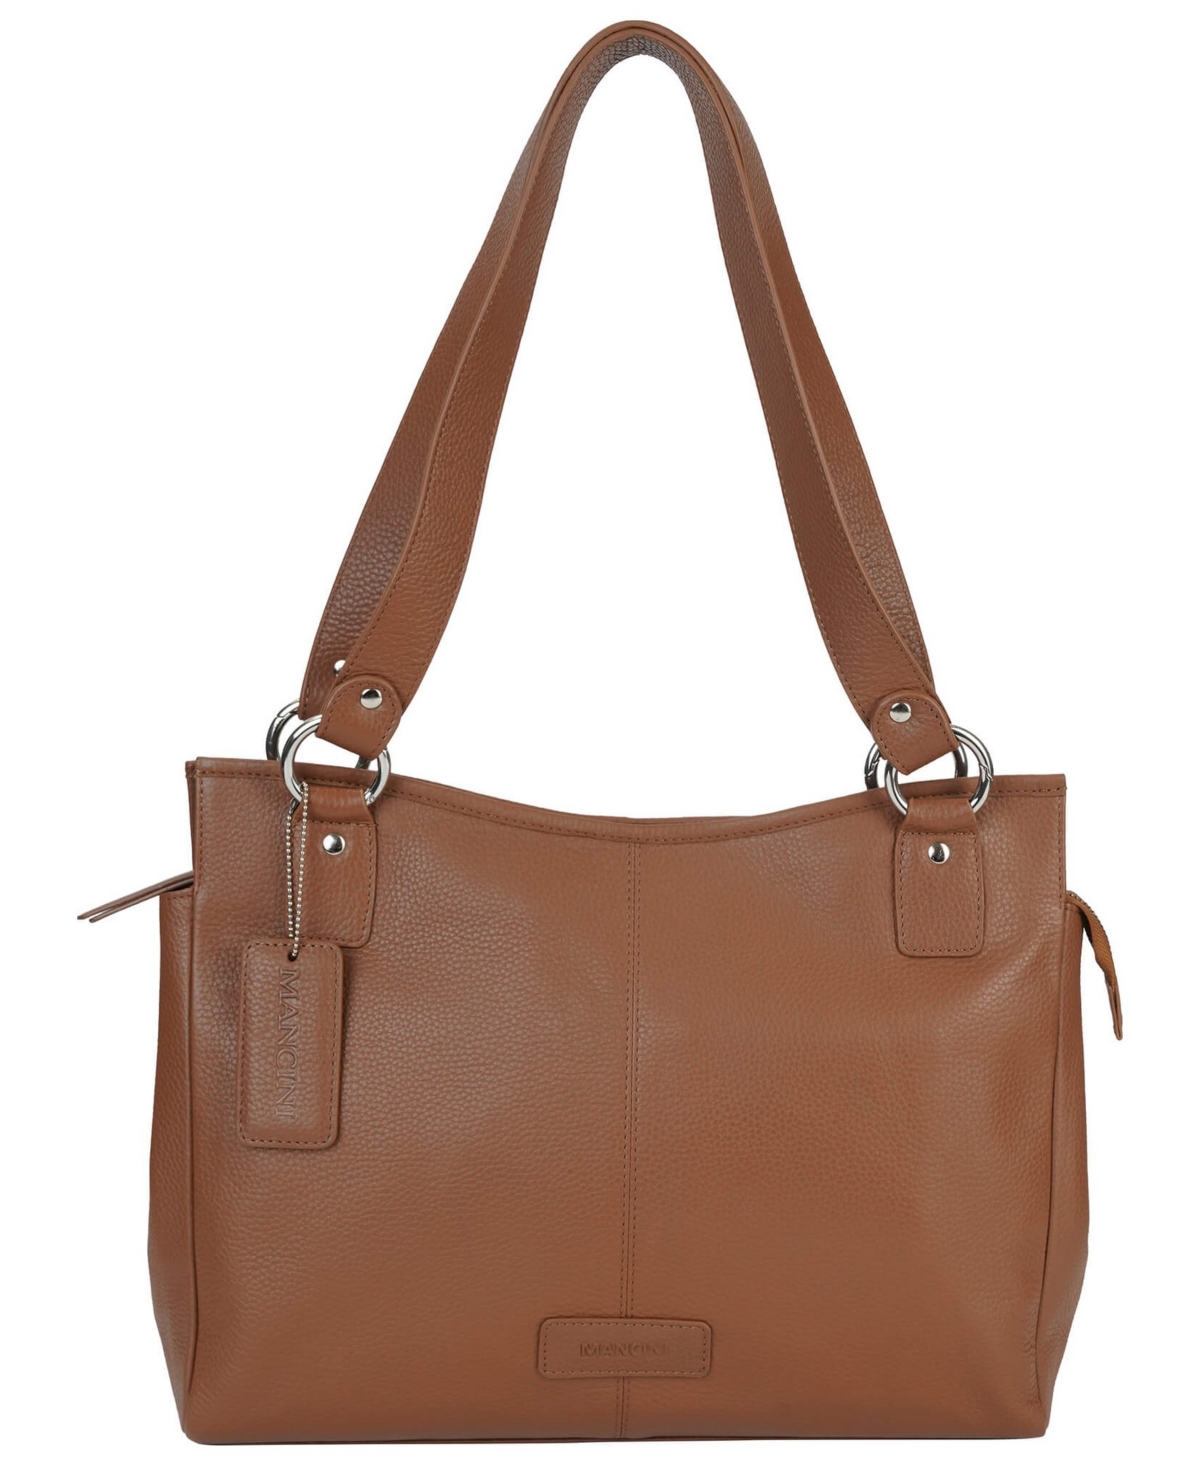 Pebble Kelsea Leather Shoulder Bag - Camel